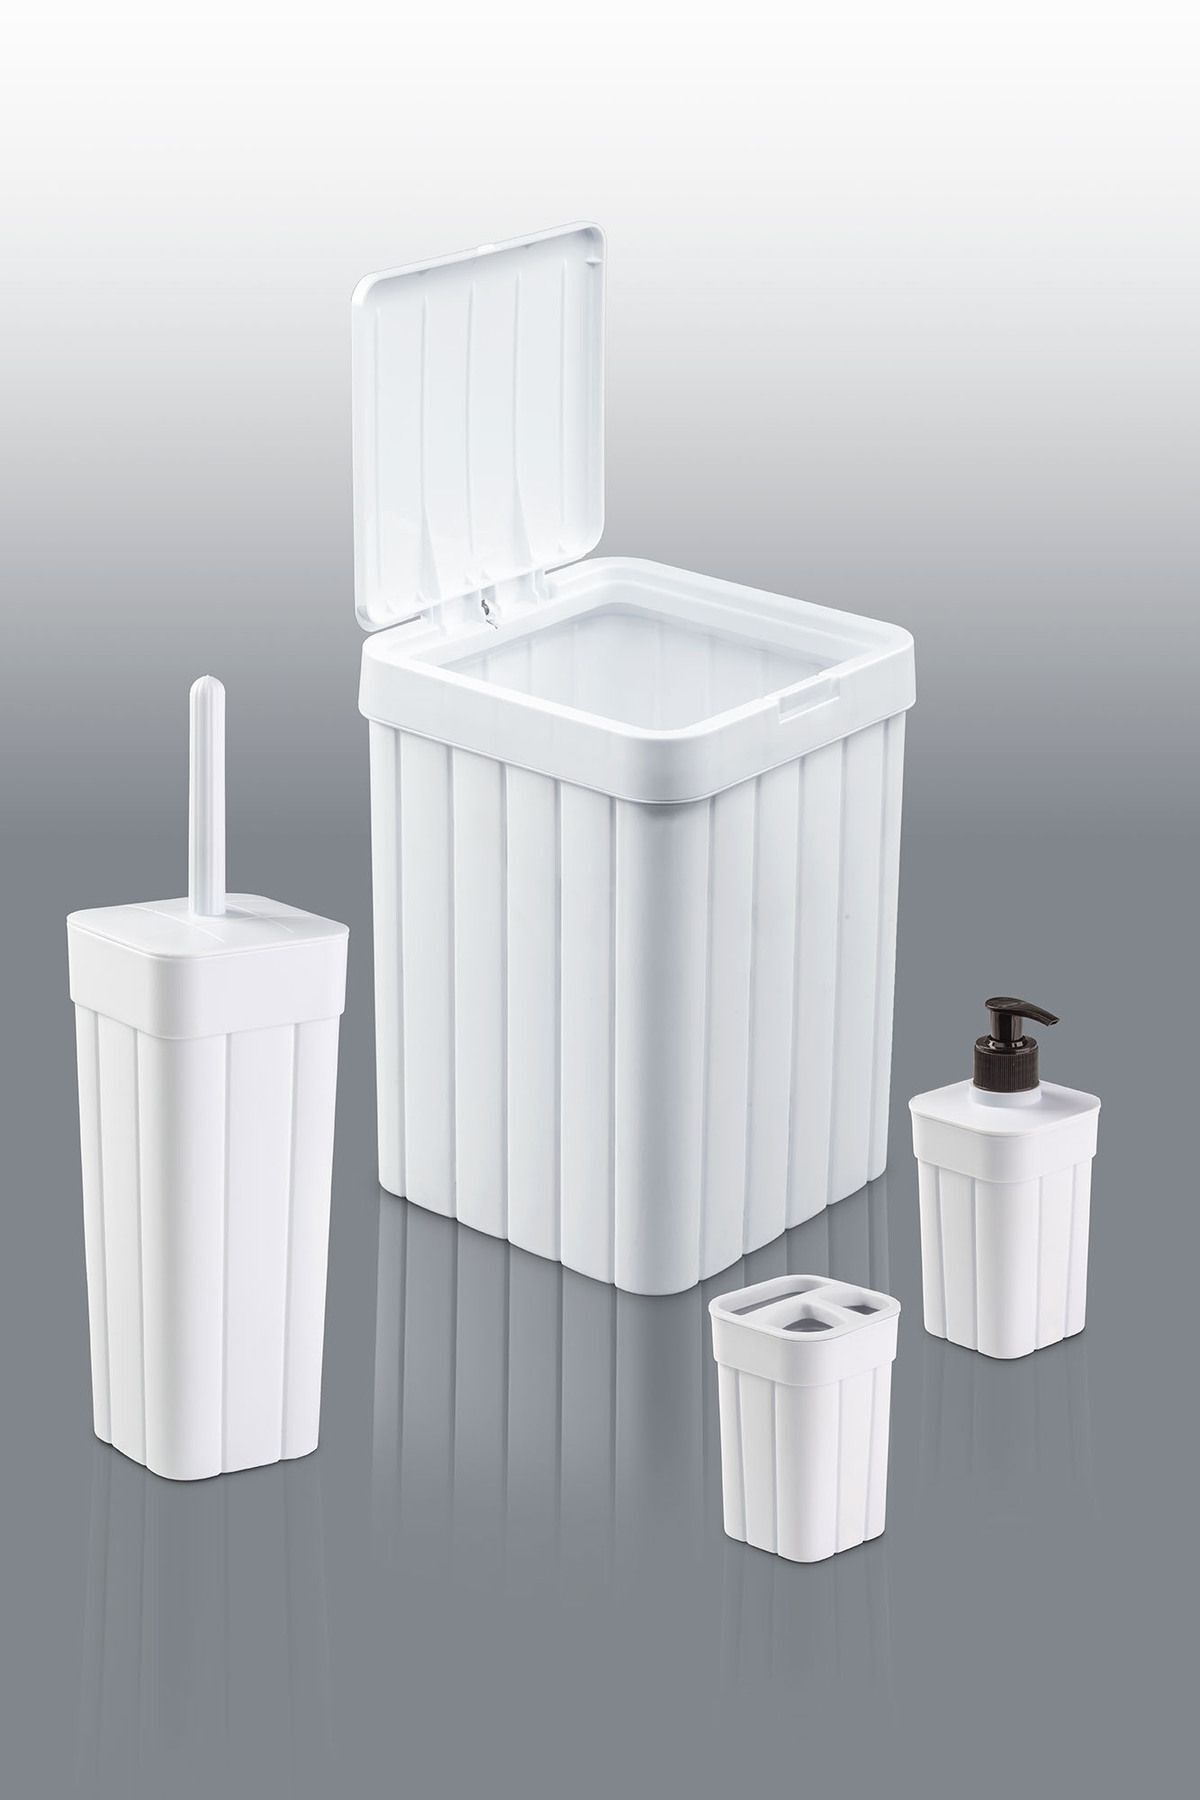 plastyol Fitil Desen 4'lü Banyo Seti -çöp Kovası,wc Fırçalık,diş Fırçalık Ve Sıvı Sabunluk - Bas Aç Kapaklı